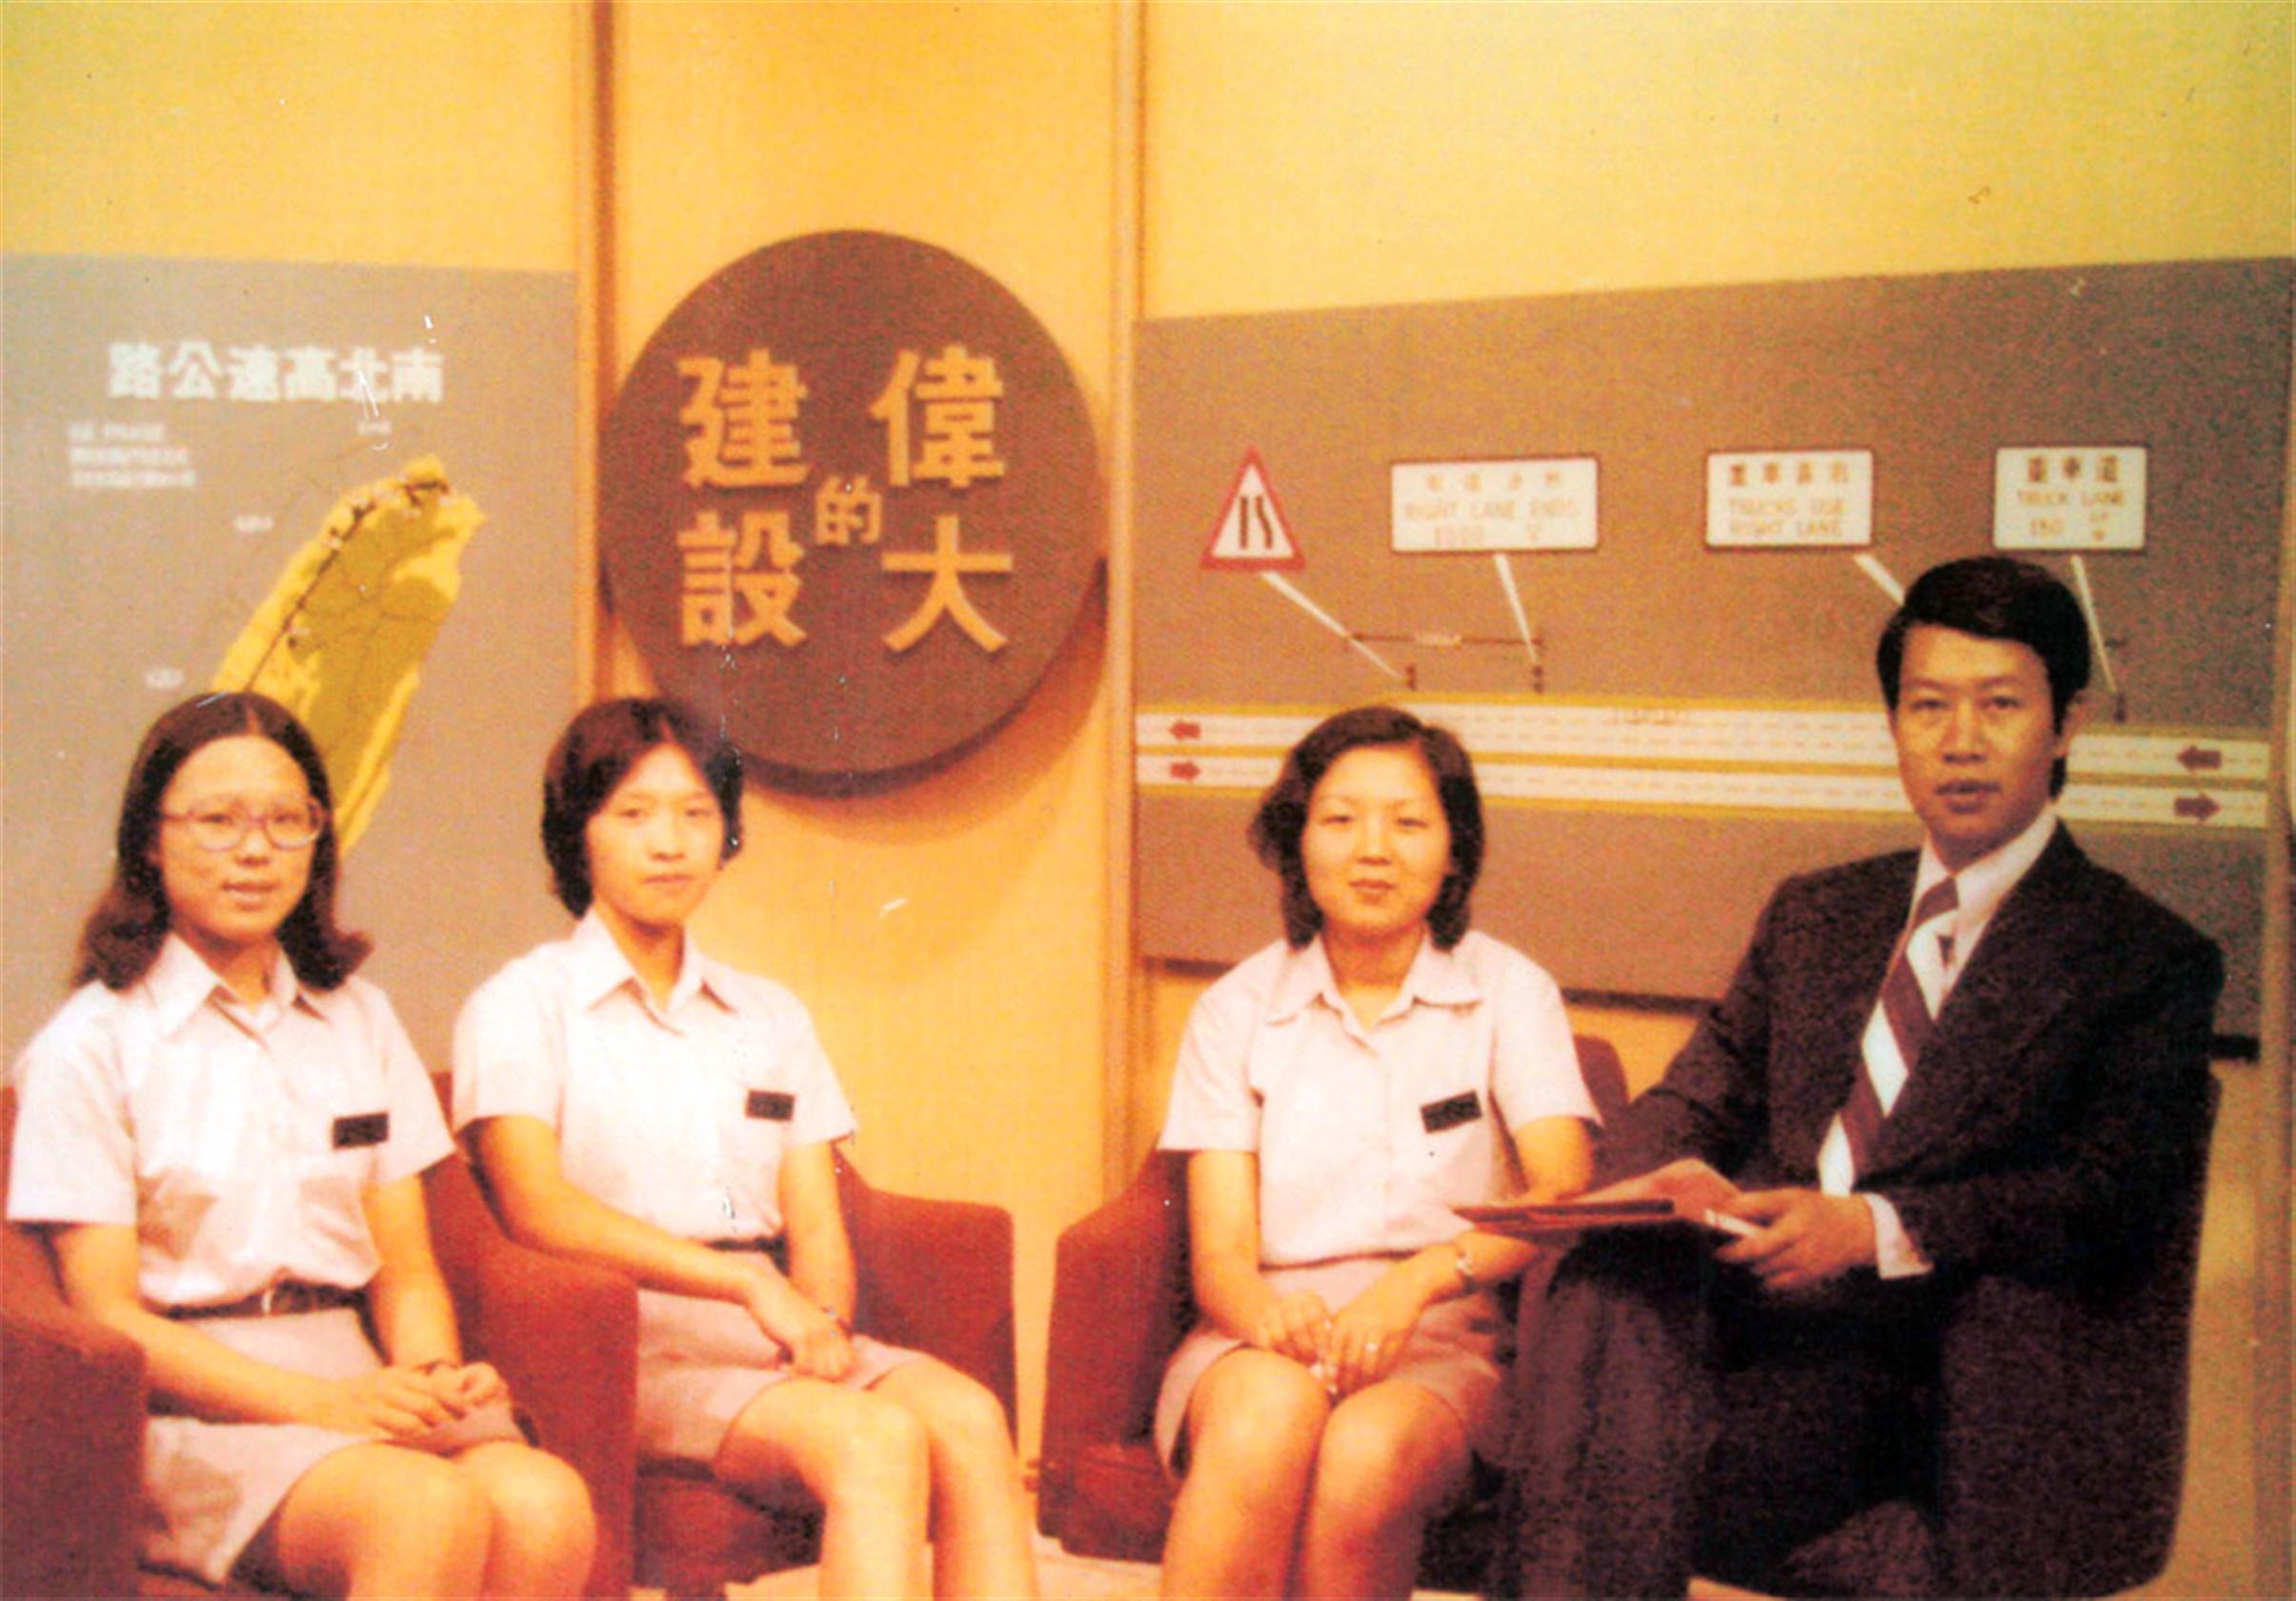 民國63年8月23日臺灣電視公司專訪泰山站收費員，製作『偉大的建設』高速公路篇專輯。